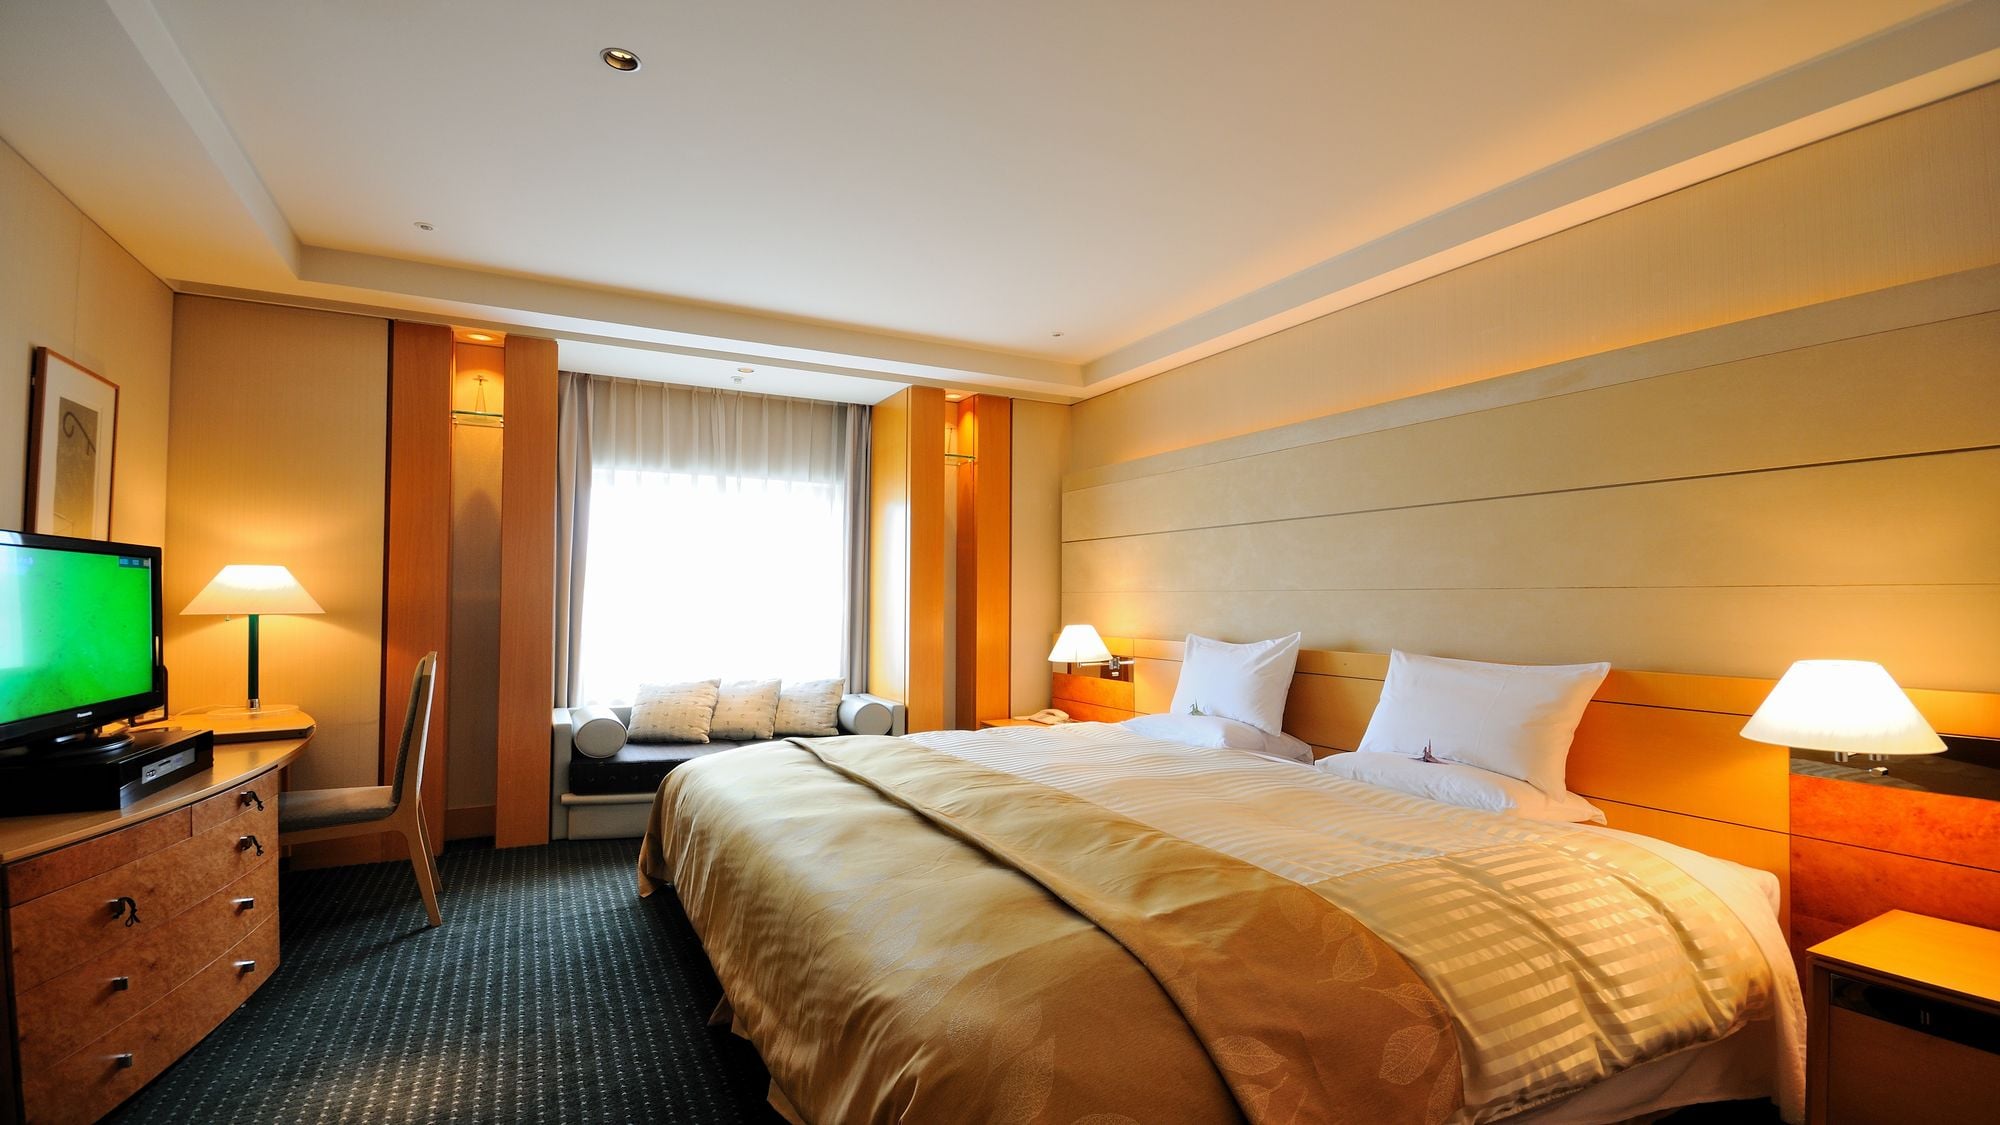 套房 □ 83 平方米 □ 床寬 240 厘米 特大床 有兩個房間，一個臥室和一個客廳。